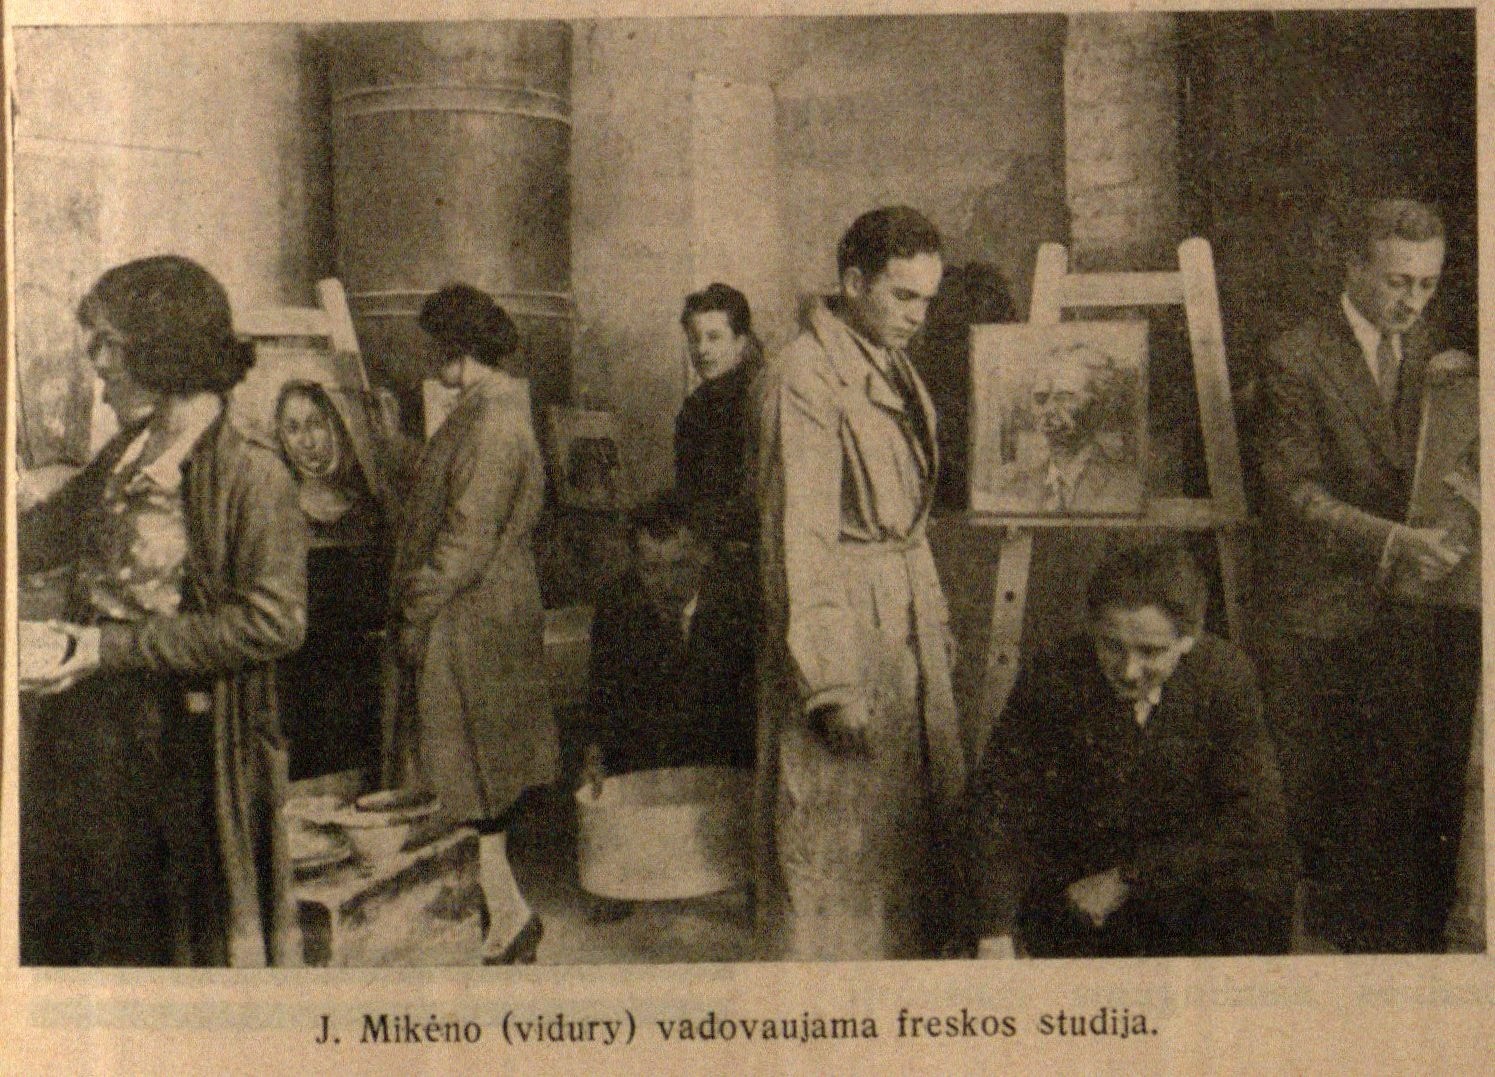 J. Mikėno (vidury) vadovaujamos freskos studija // Bangos. – 1932, Nr. 22, p. 619.